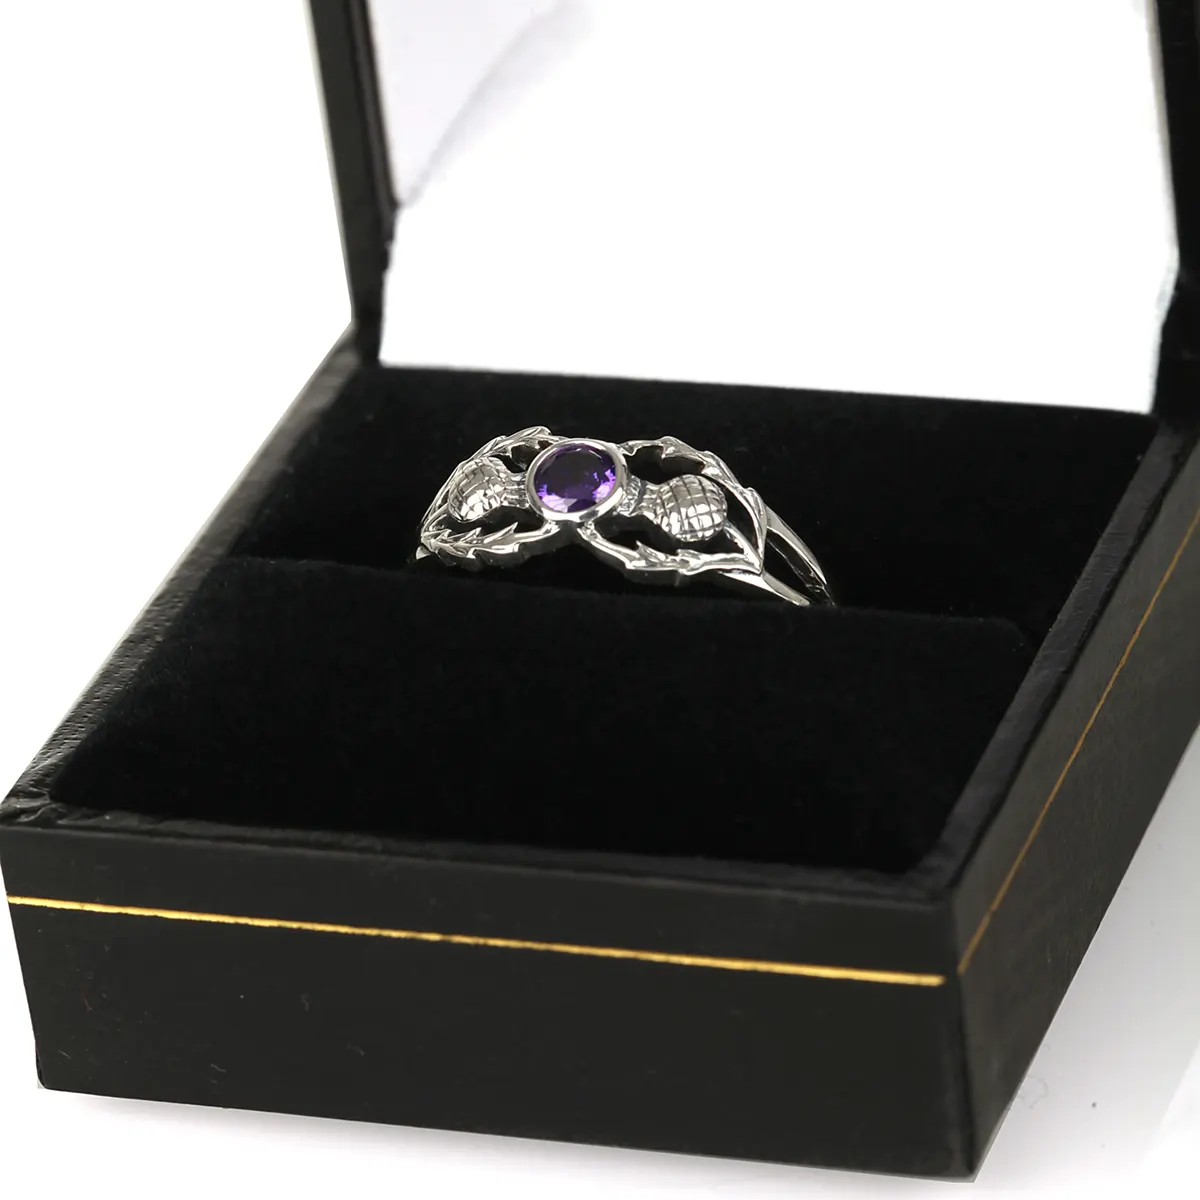 Crystal Scottish Thistle - Sterling Silber Ring mit schottischen Disteln & Kristall